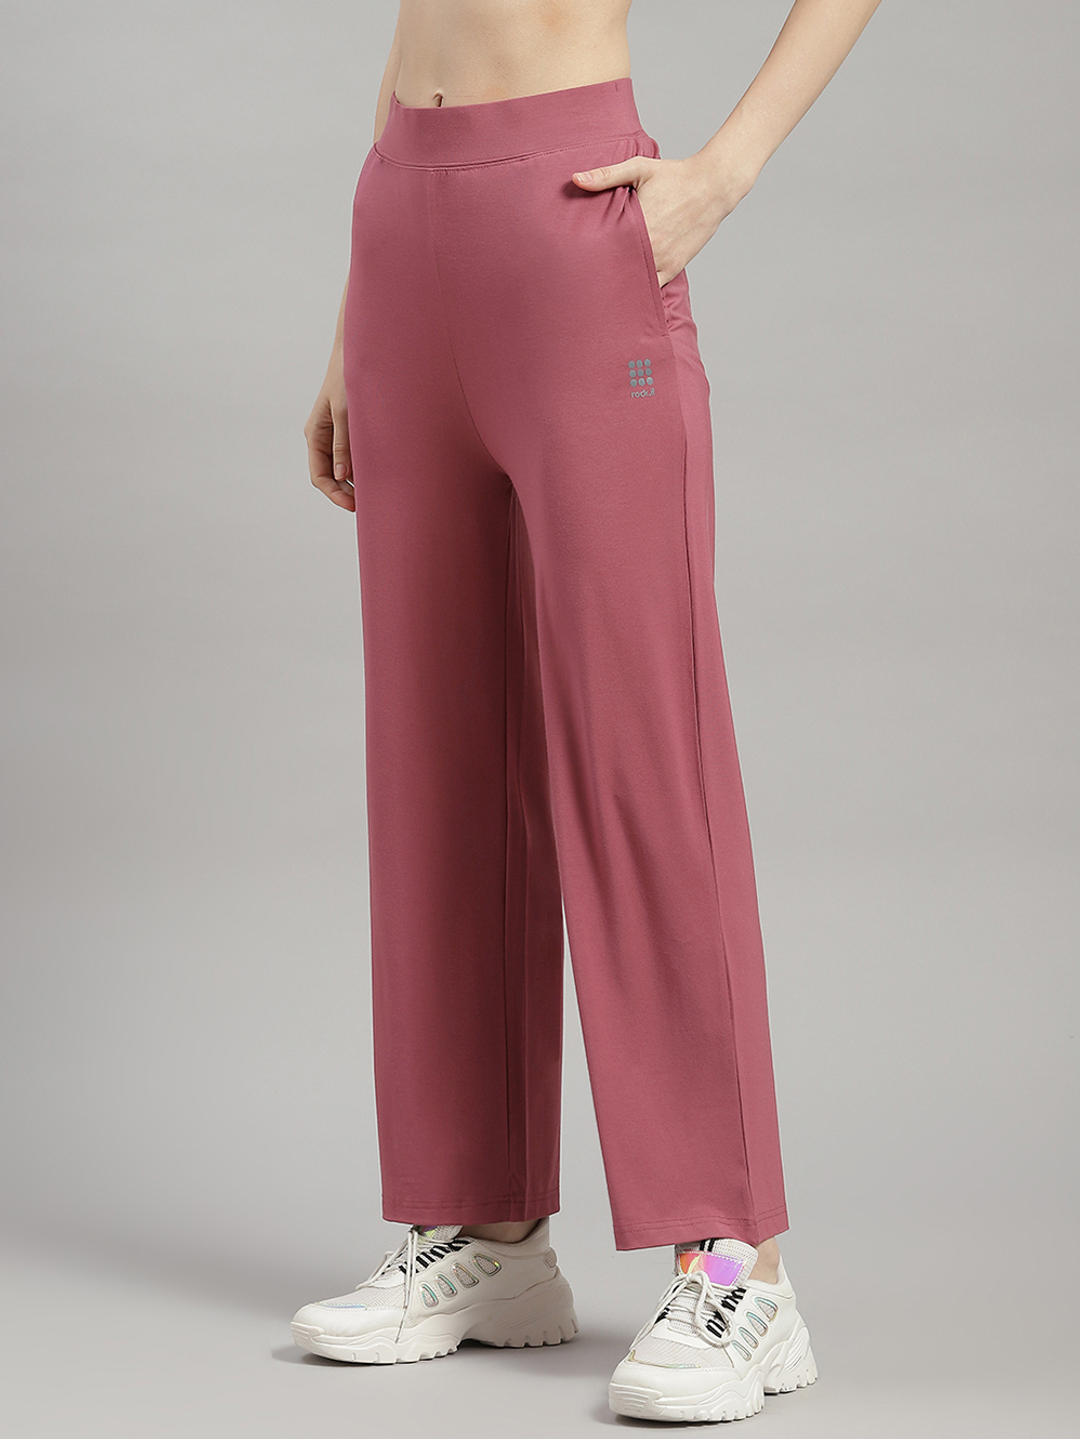 DoroTennis 90s Vintage Track pants Woman's Size Large Pink Paris